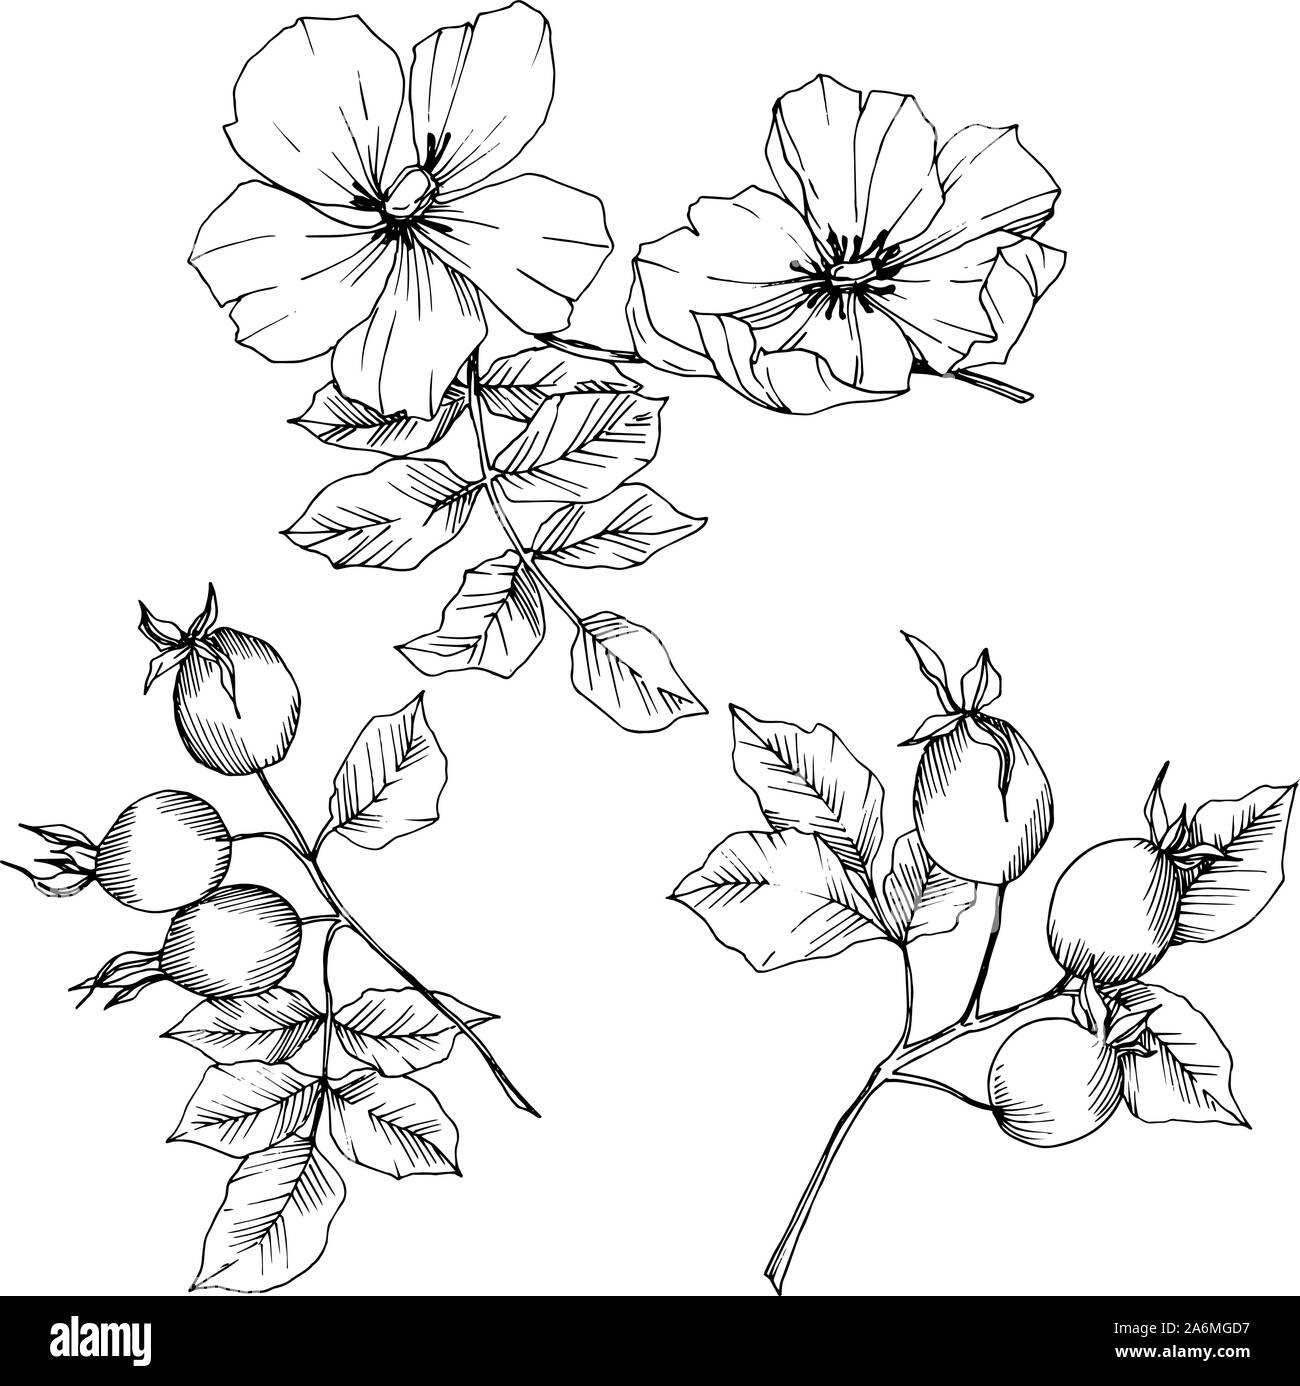 Цветы шиповника контурный рисунок